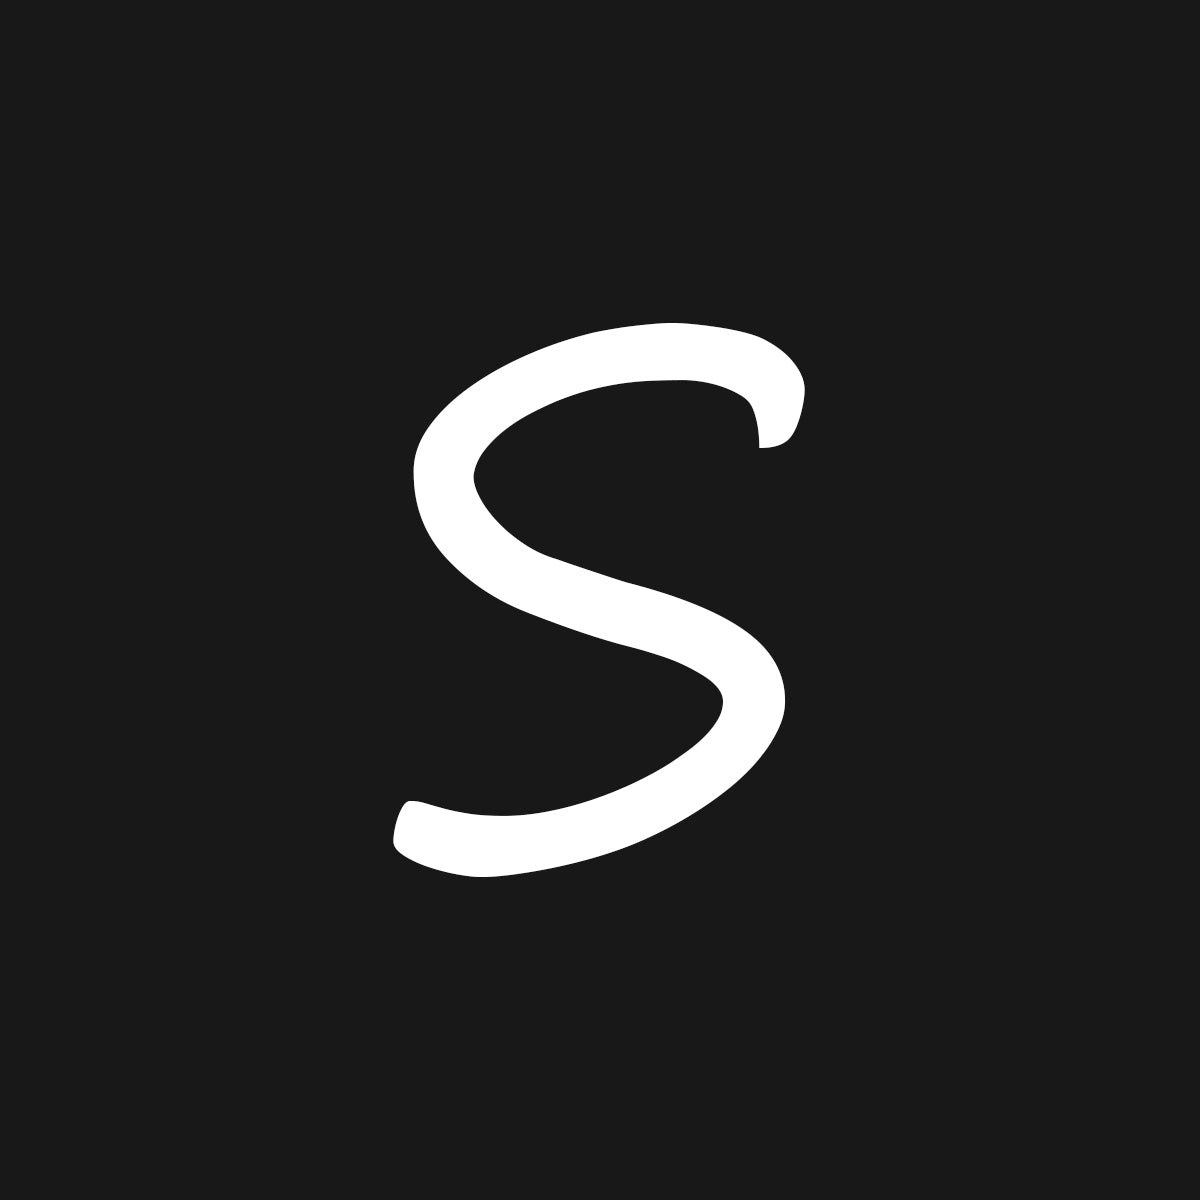 Sendy Newsletter Integration for Shopify